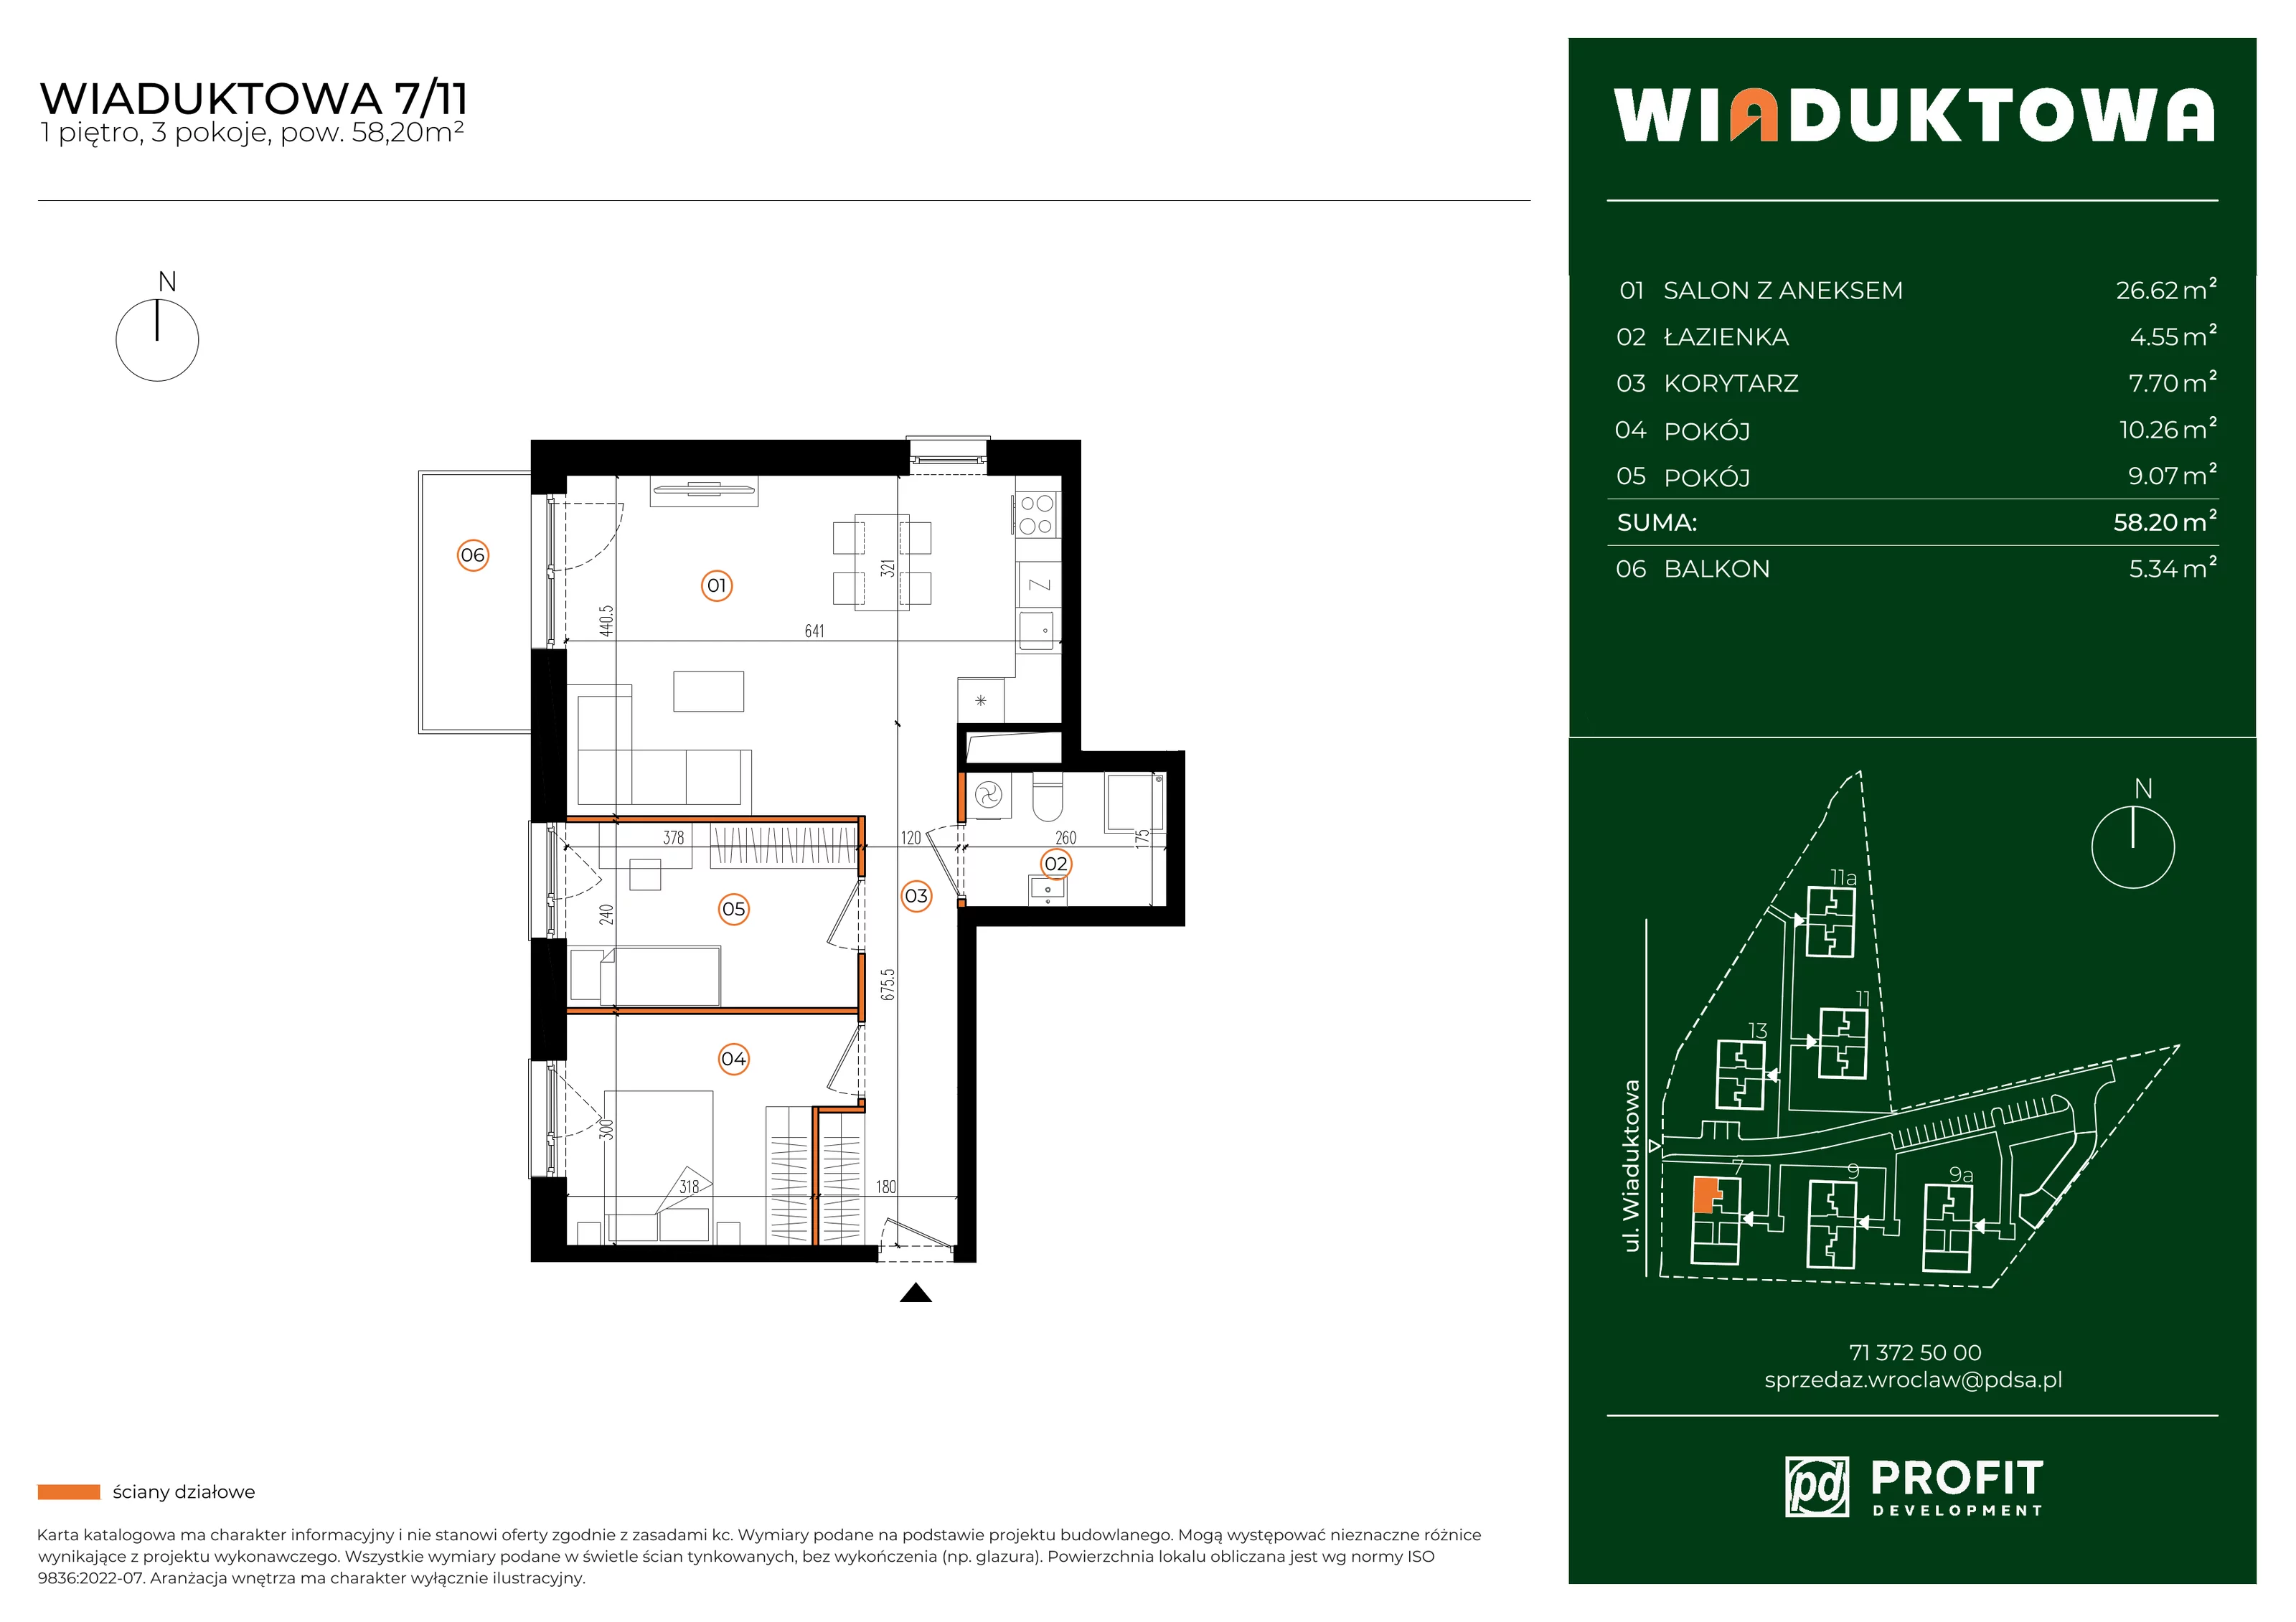 Mieszkanie 58,20 m², piętro 1, oferta nr WI/7/11, Wiaduktowa, Wrocław, Krzyki-Partynice, Krzyki, ul. Wiaduktowa